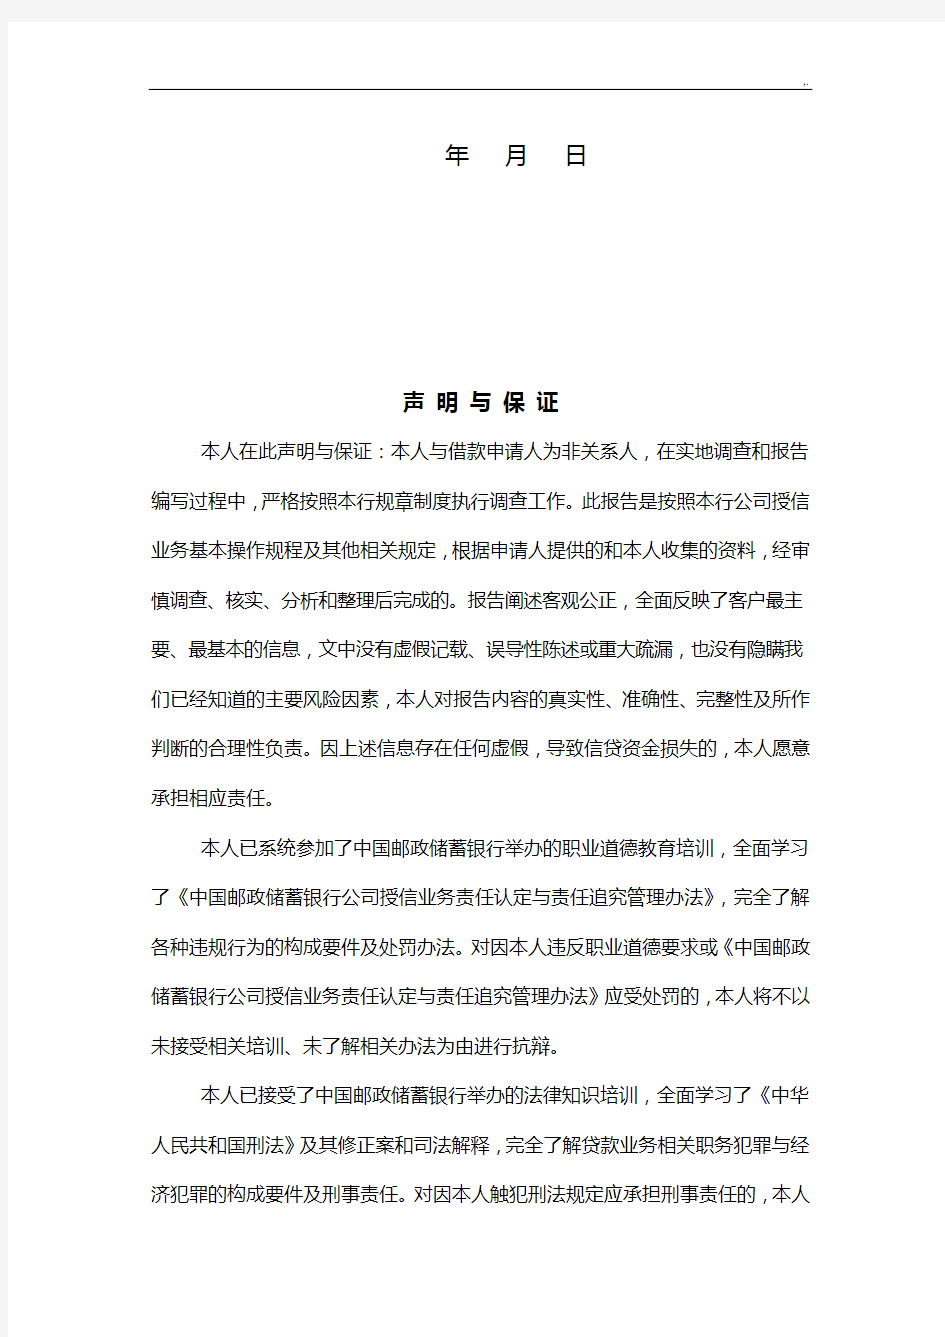 中国邮政储蓄银行集团公司授信业务调查报告(2015年度版)流动资金(三流合一)